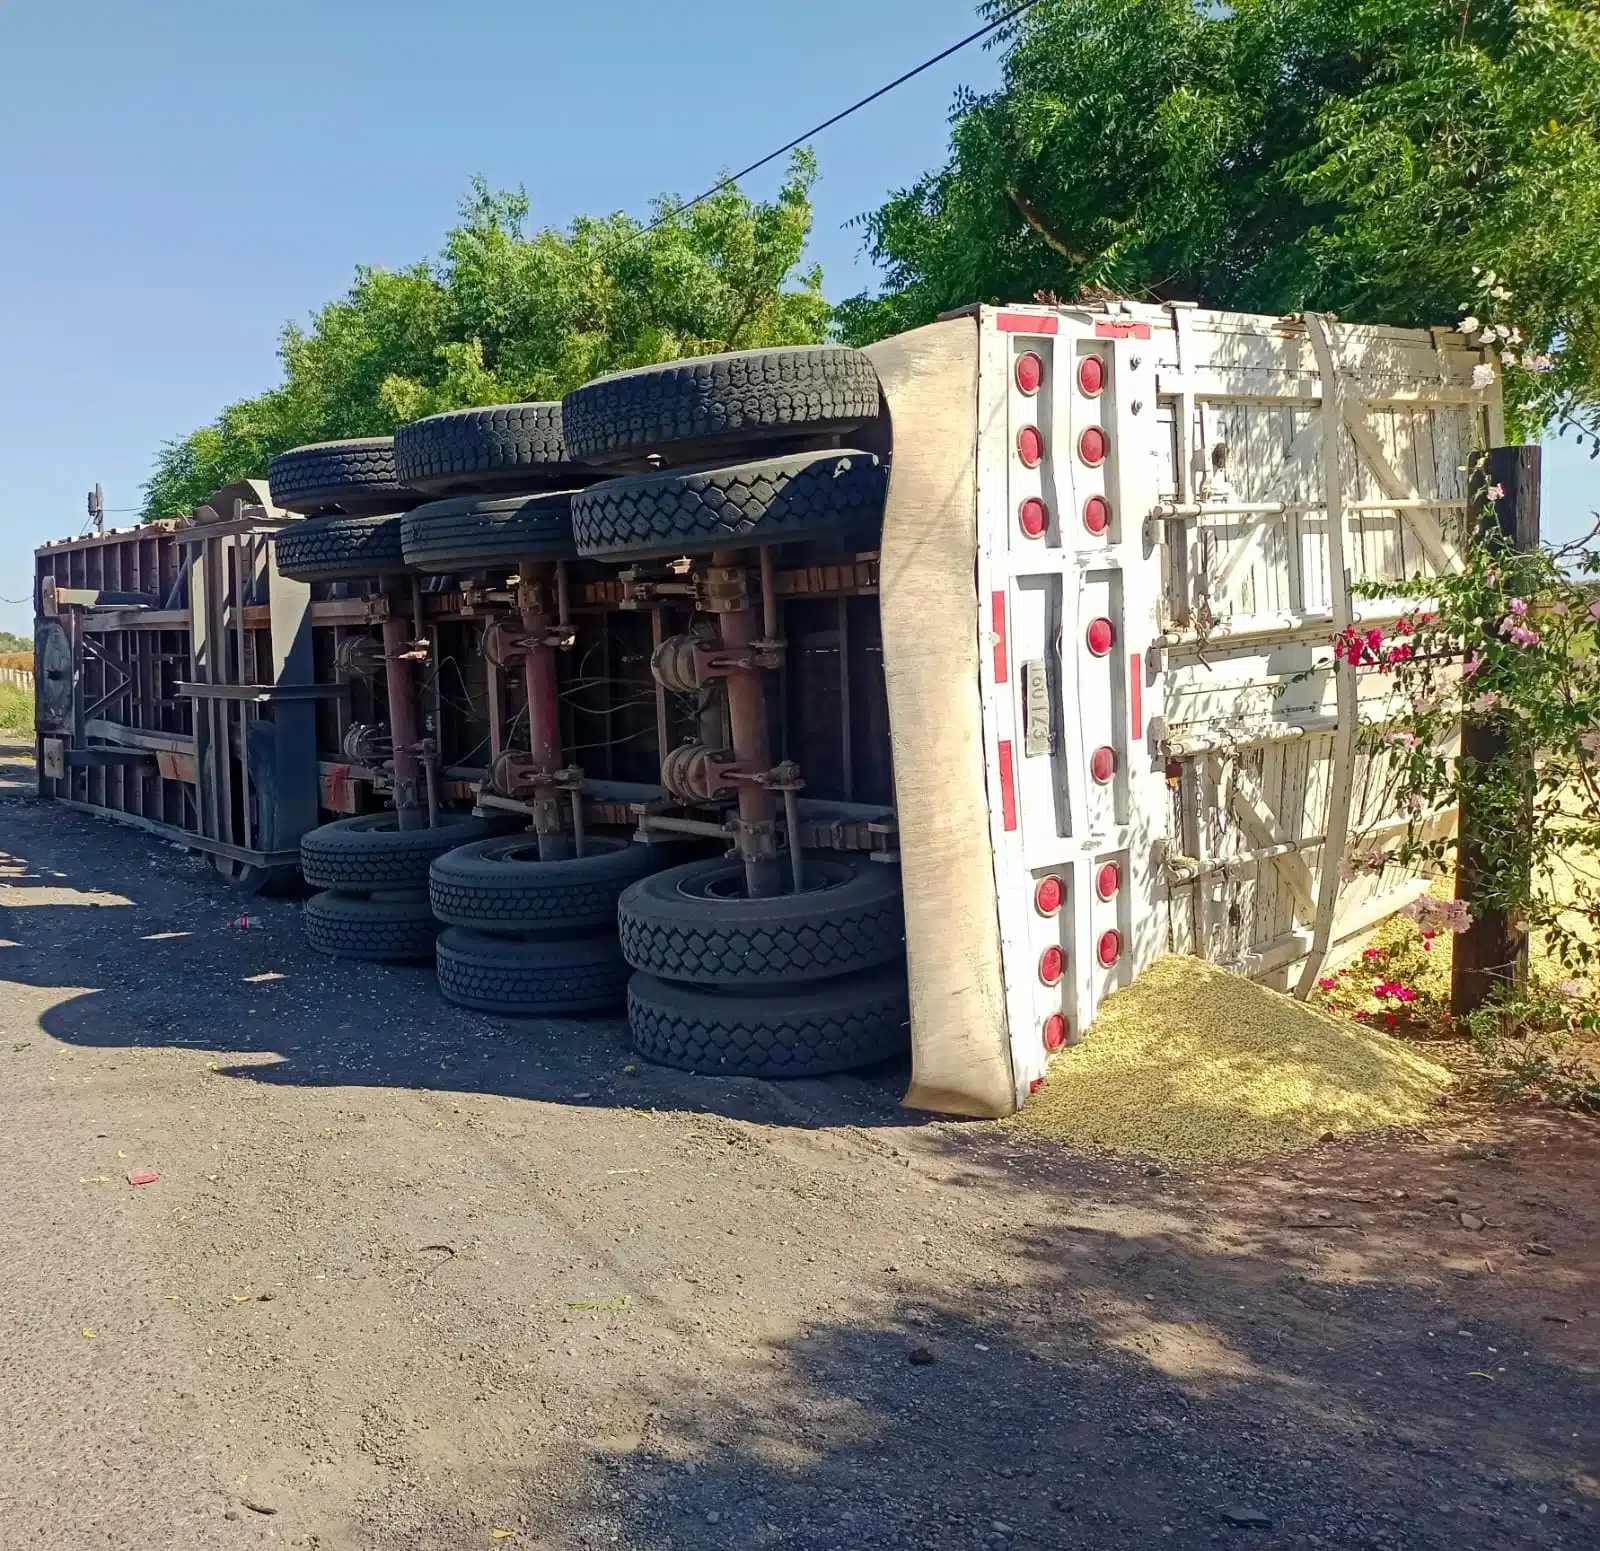 Tráiler volcado con los neumáticos hacia un lado tras un accidente en Los Mochis